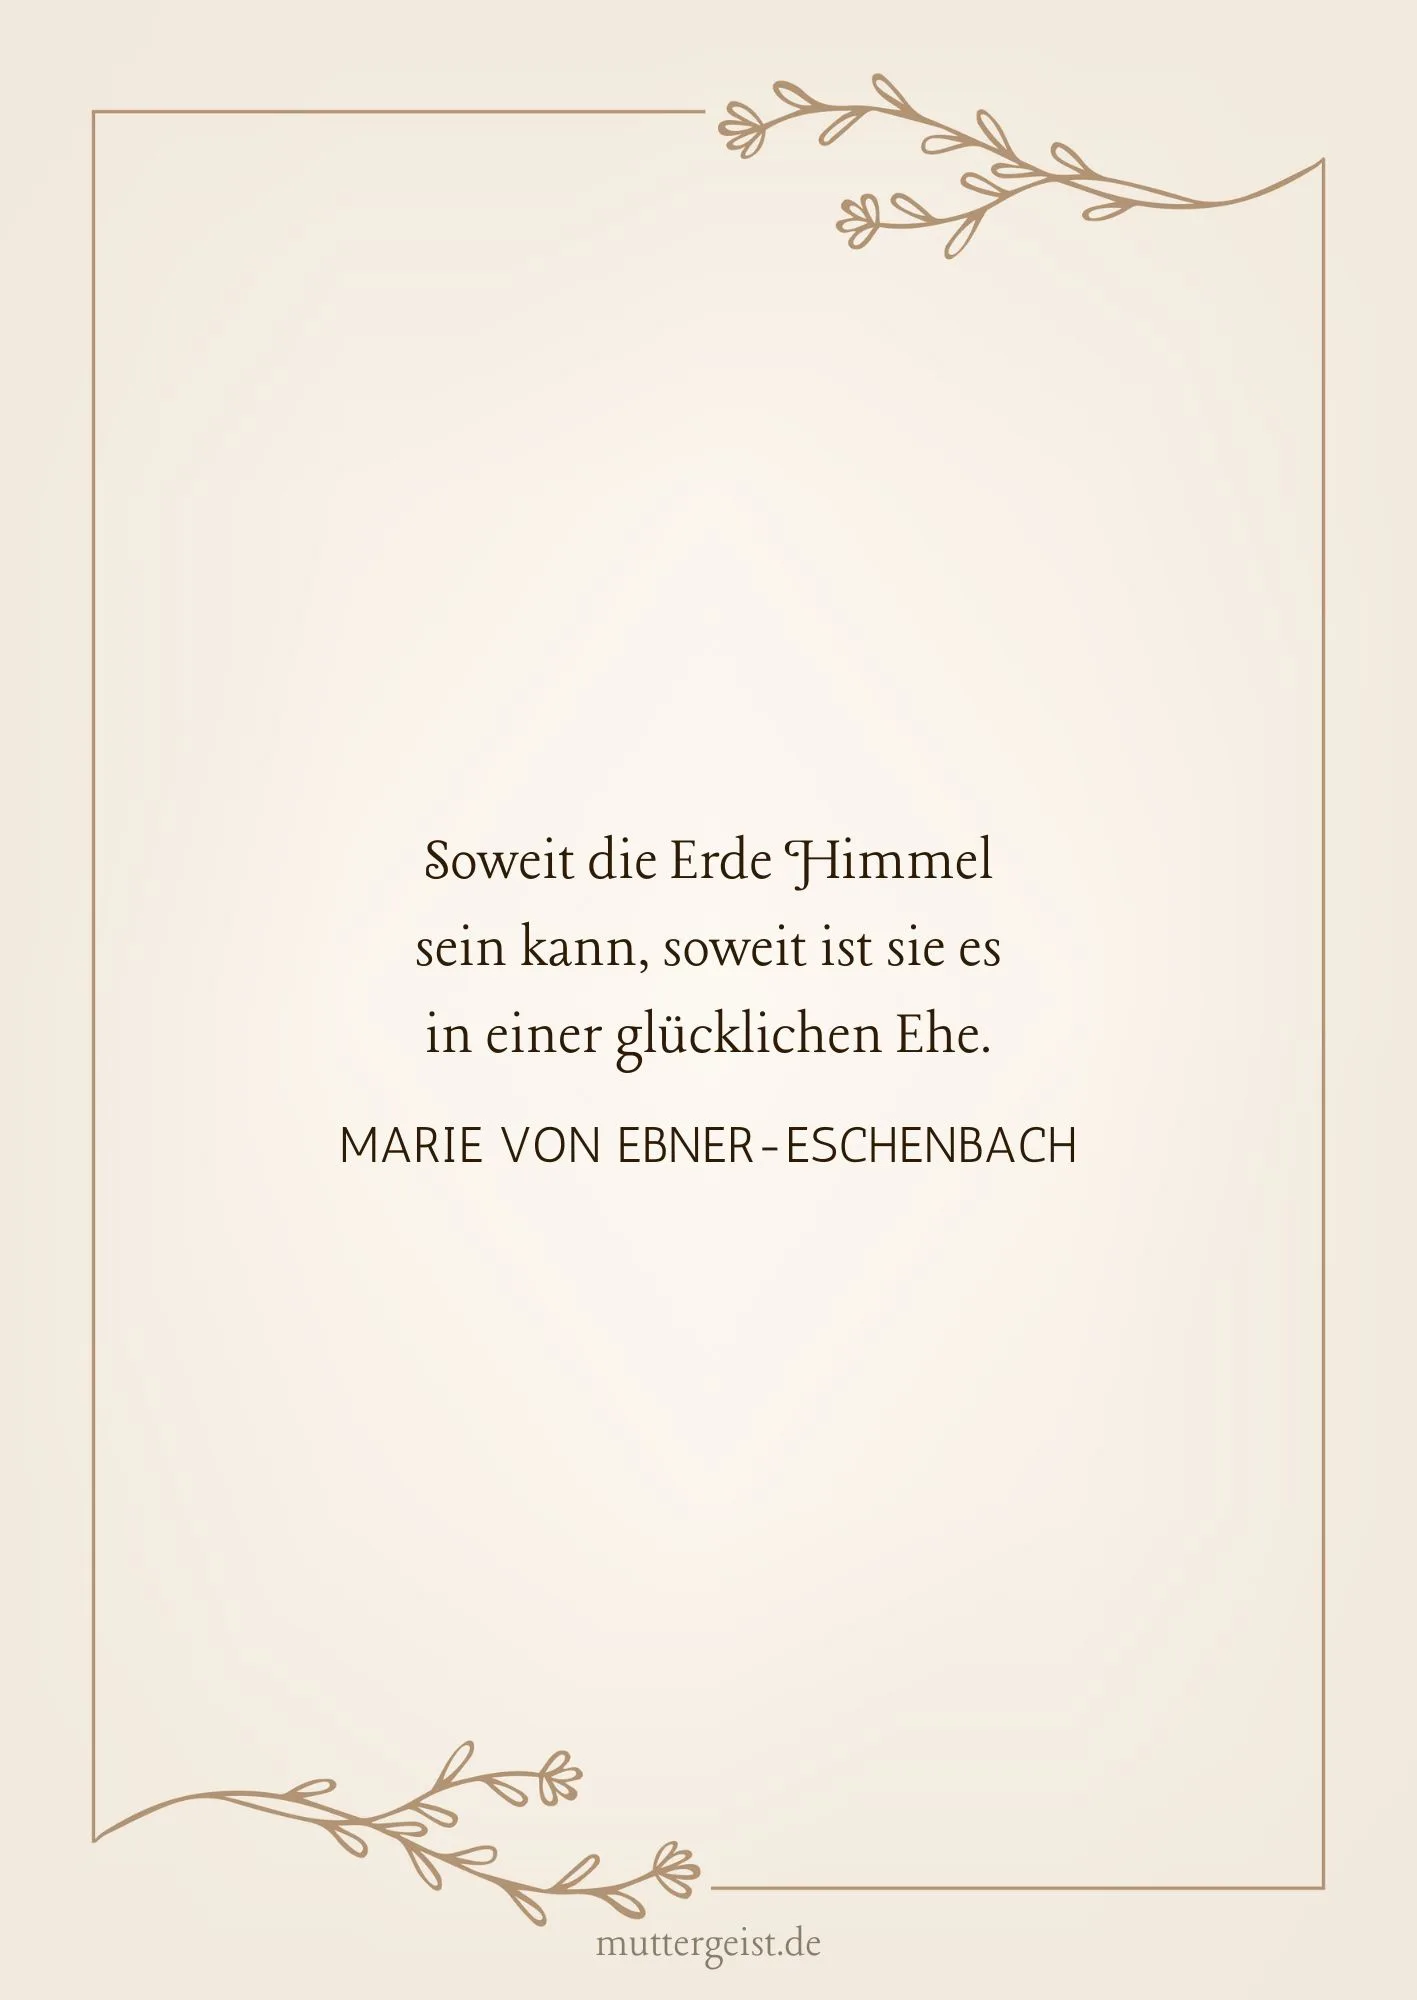 Marie von Ebner-Eschenbachs Zitat zum 50. Hochzeitsjubiläum